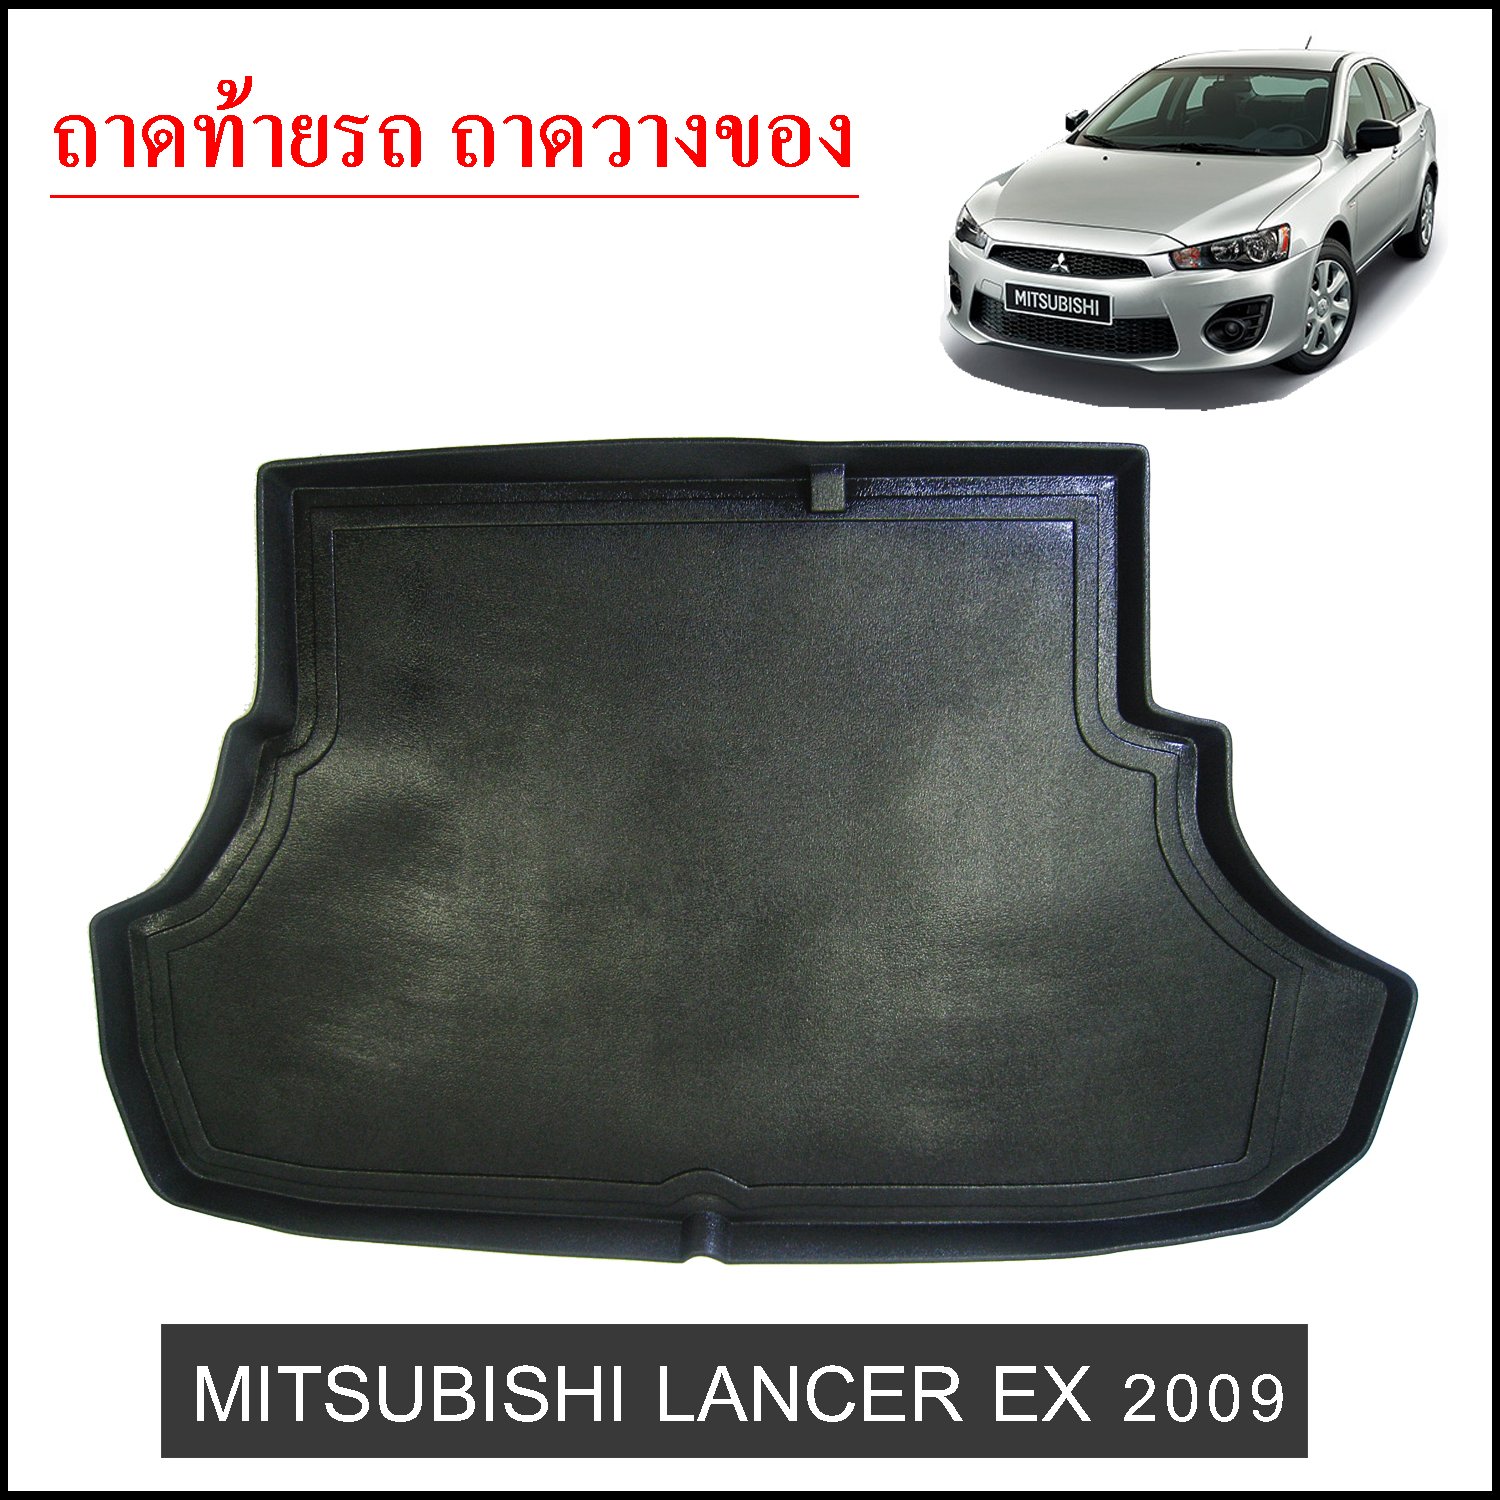 ถาดท้ายวางของ Mitsubishi Lancer EX 2009